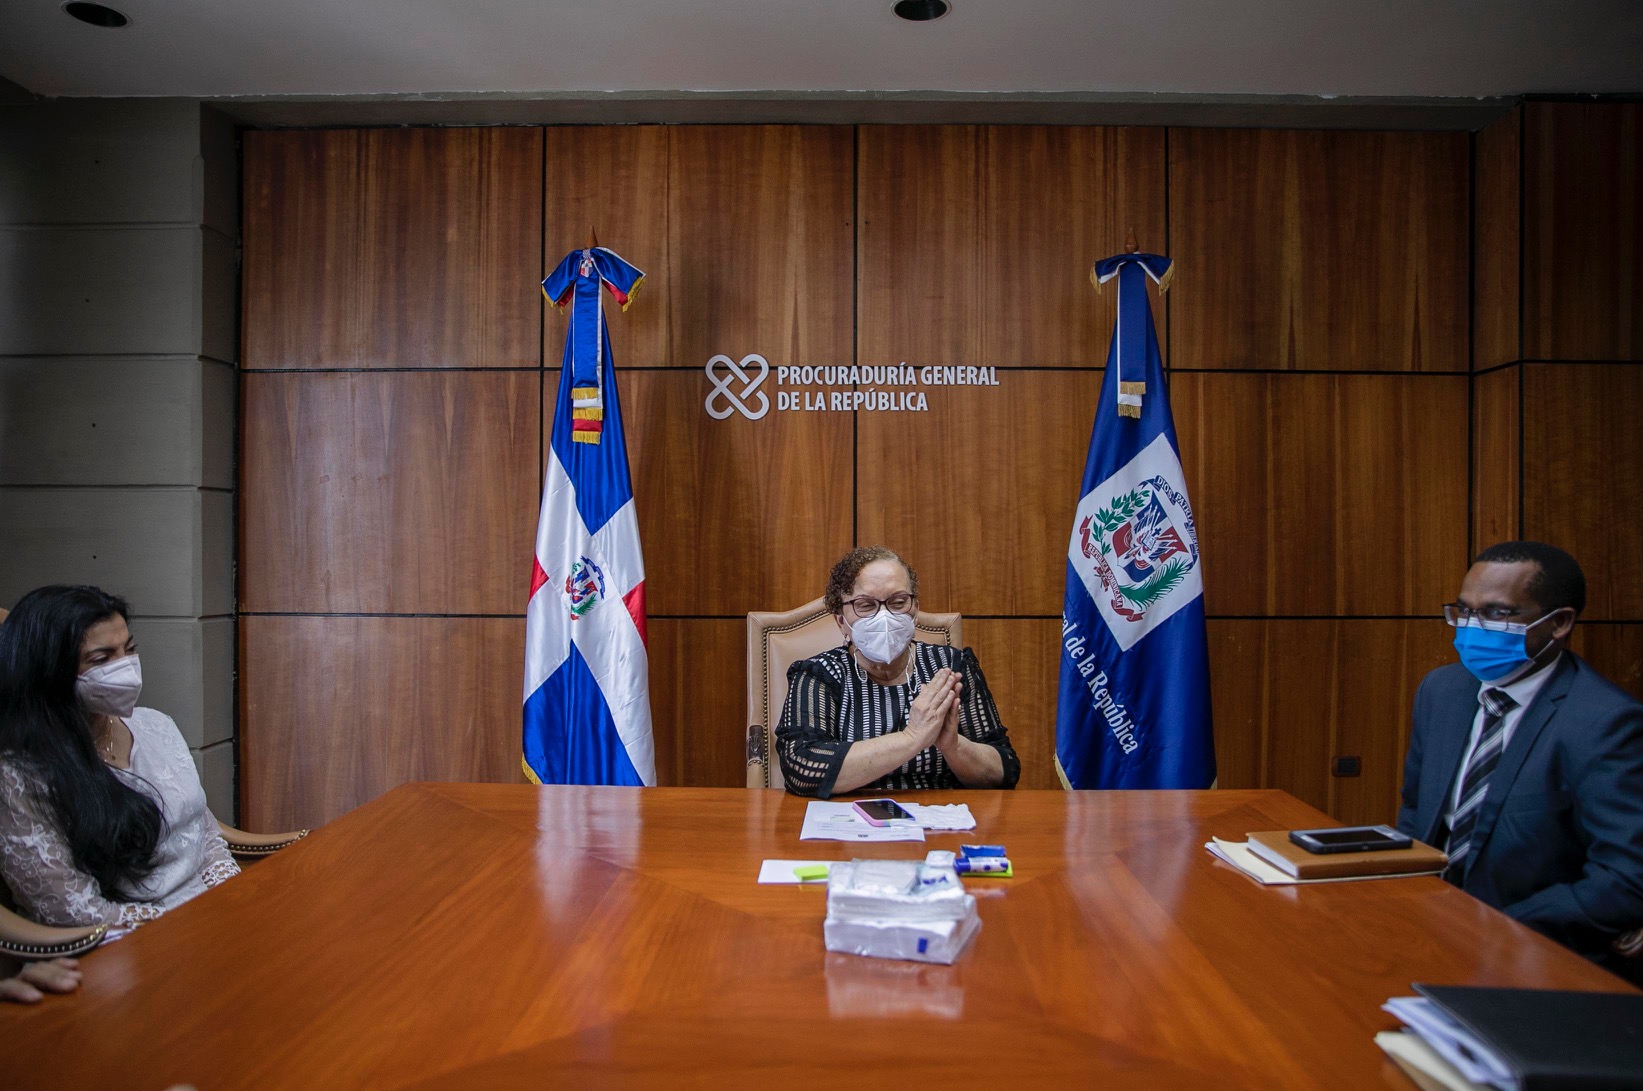 Procuradora General y fiscal de Santiago coordinan acciones contra crimen organizado